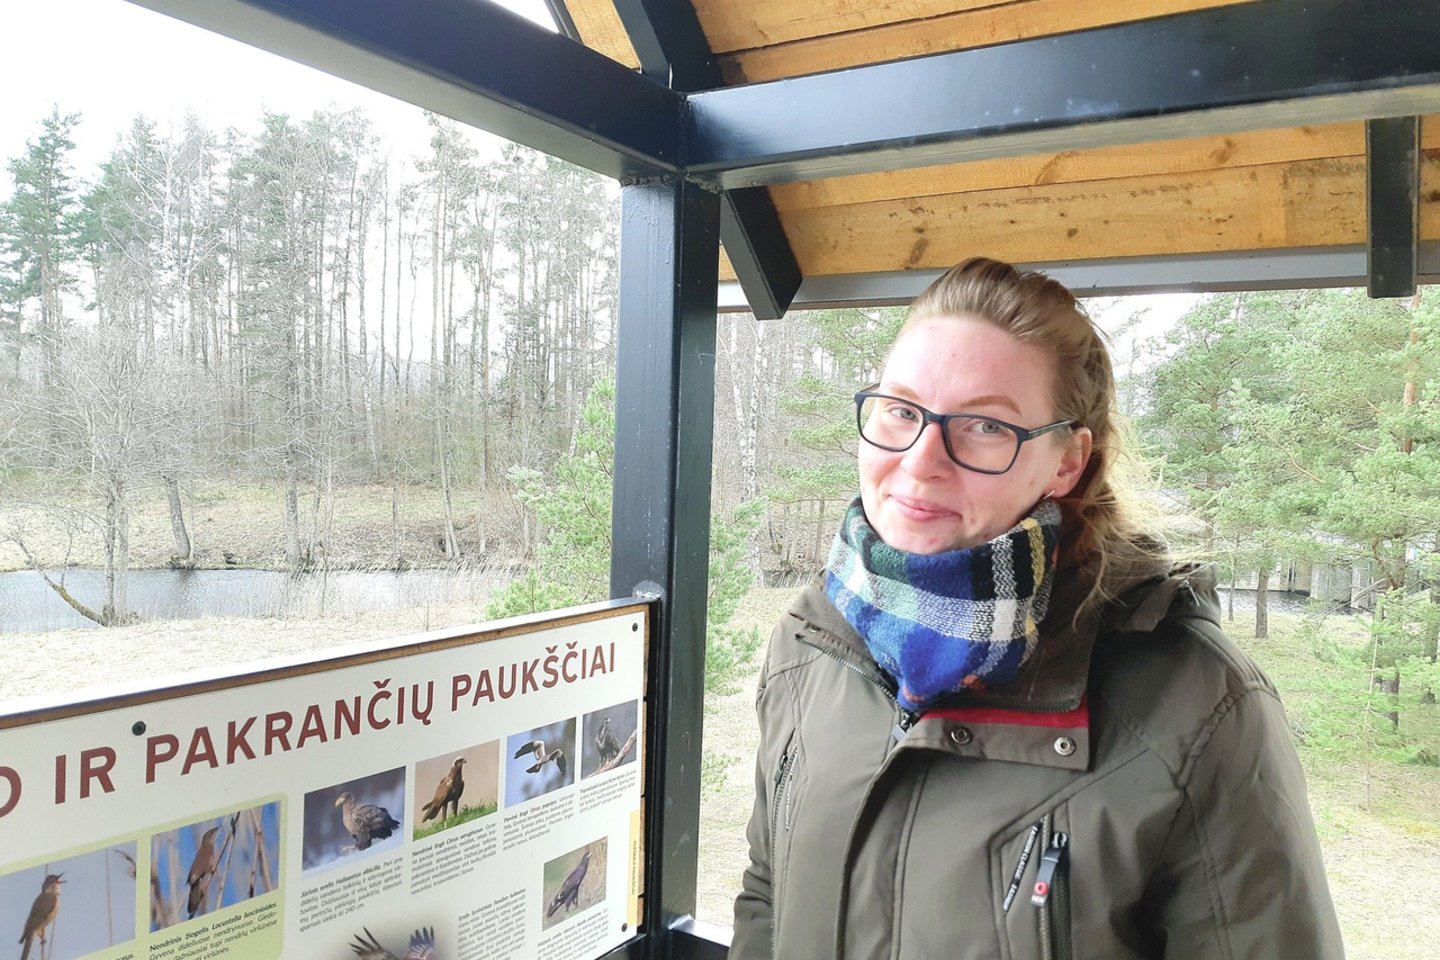 Varnių regioninio parko lankytojų centro specialistė M.Jankauskaitė įspėjo neliesti nuodingo gegužvabalio, nes jis išskiria skystį, kuris yra pavojingas.<br>D.Jonušienės nuotr.